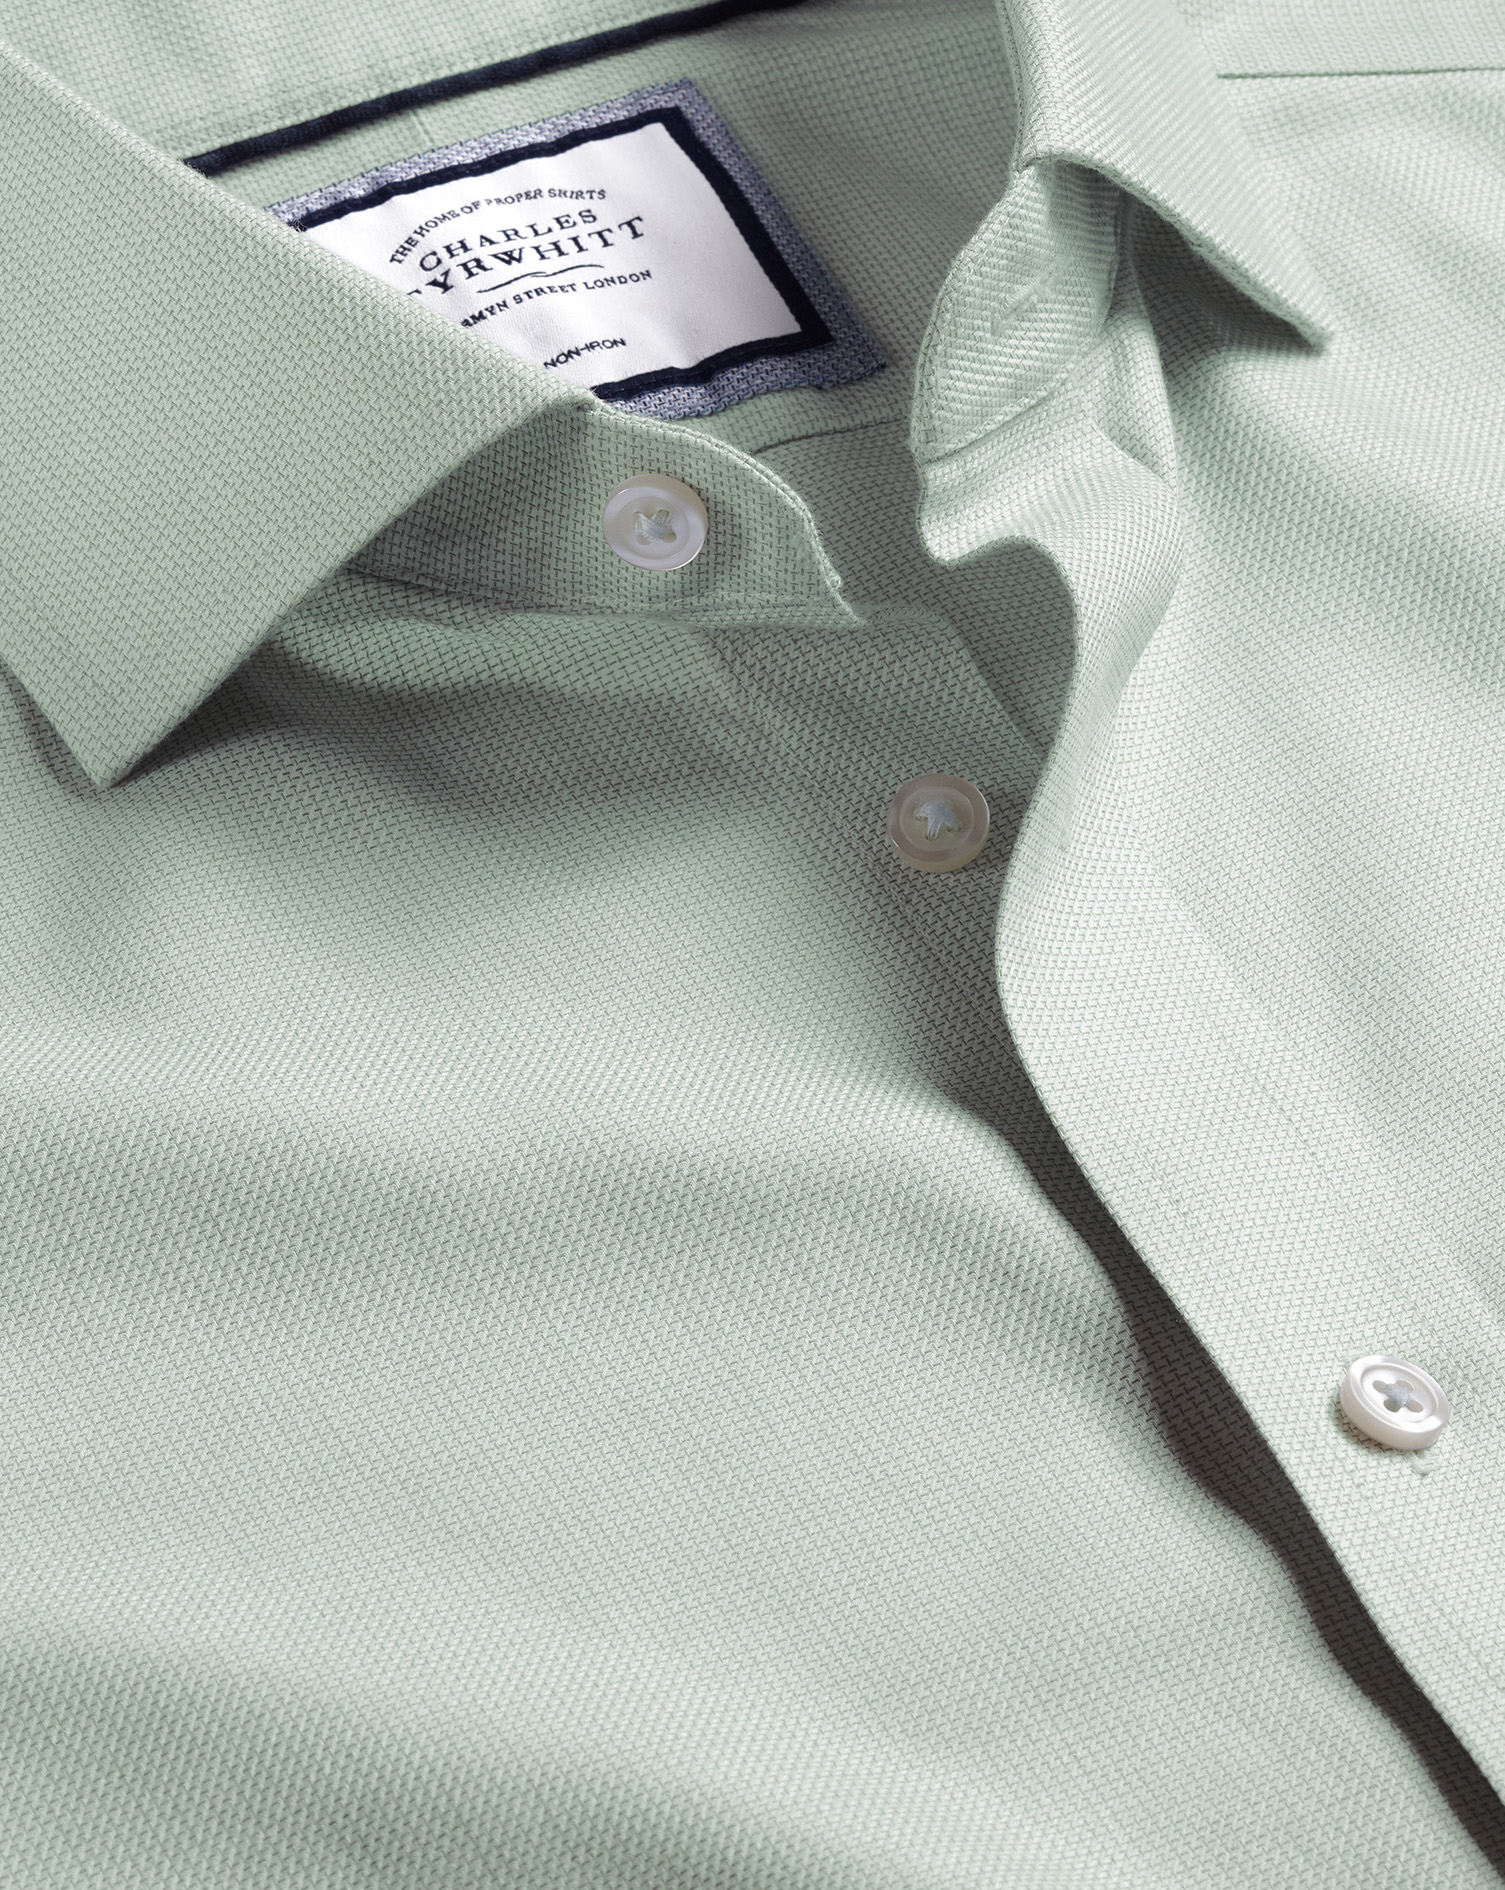 Cutaway Collar Non-Iron Richmond Weave Cotton Dress Shirt - Green Single Cuff Size 15.5/36
